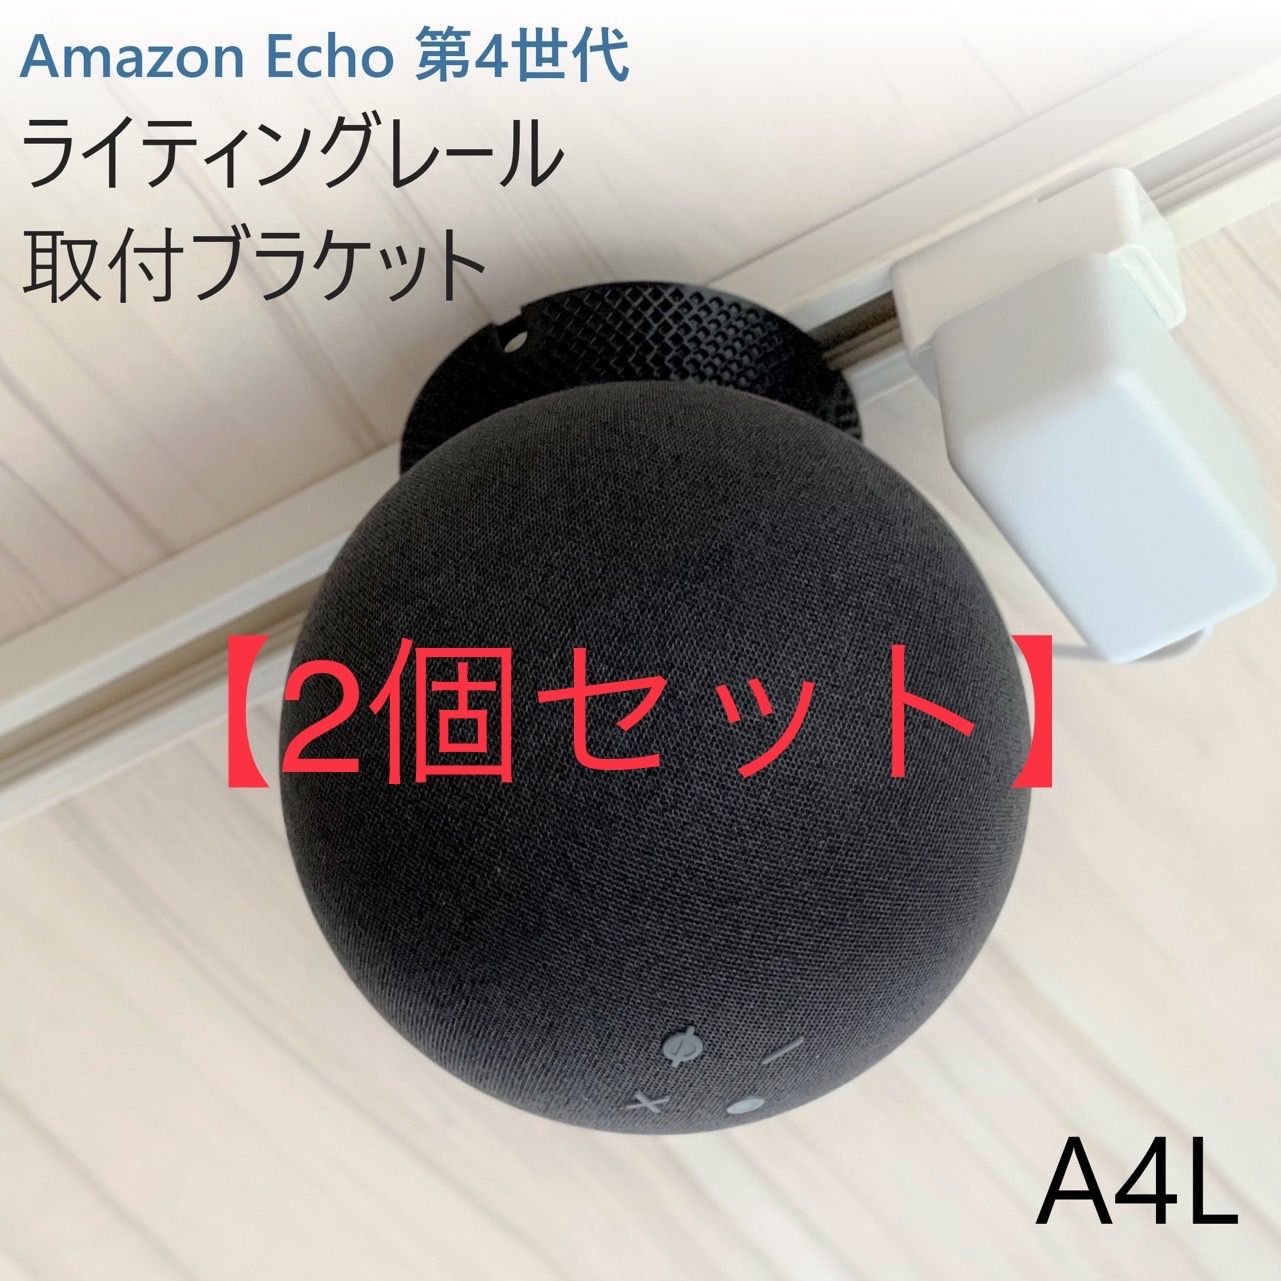 【2個】Amazon Echo 第4世代 ライティングレールブラケット[A4L]